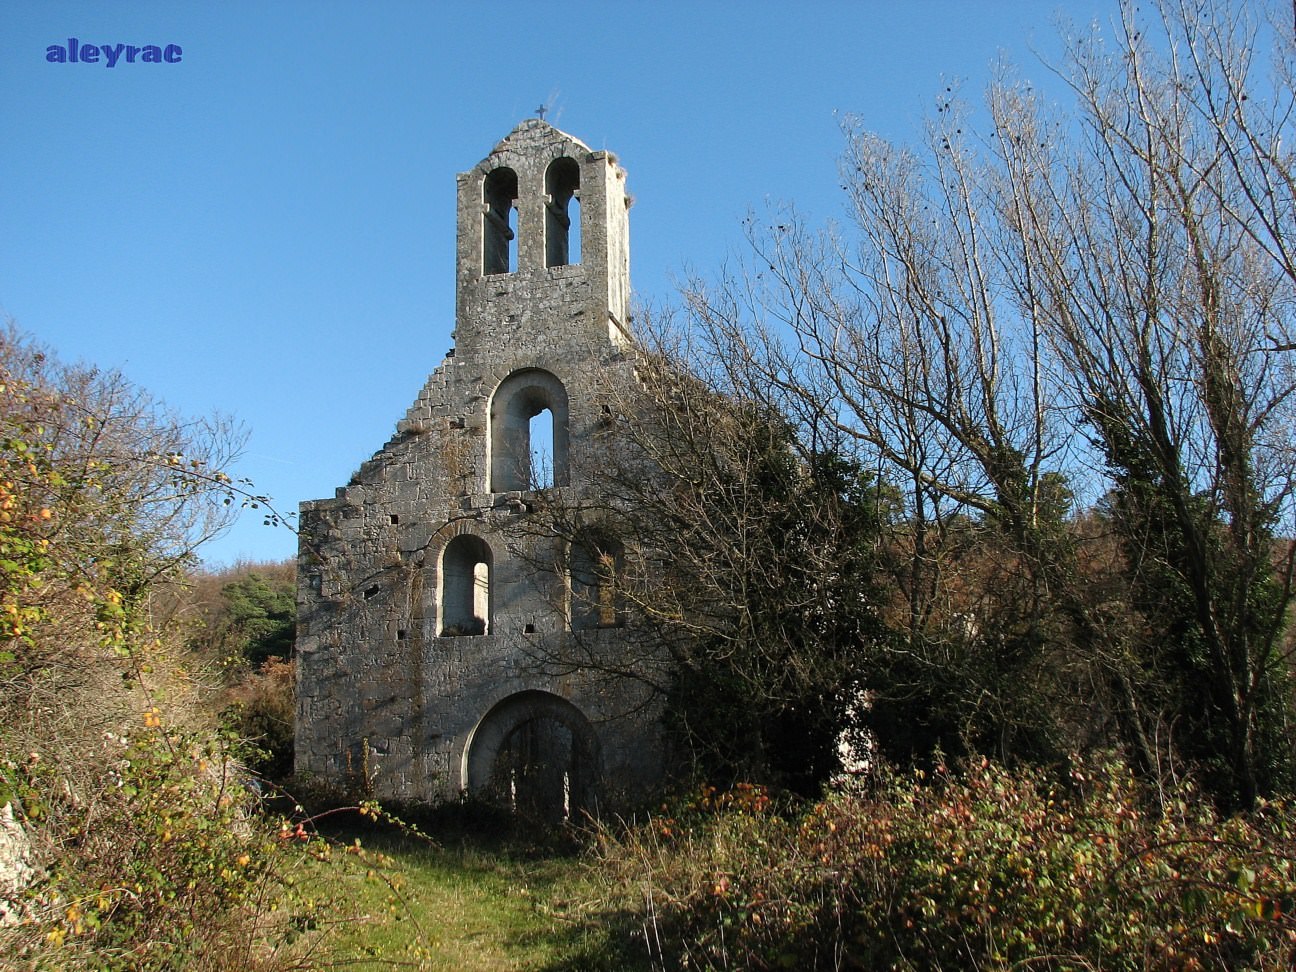 France l'Abbaye d'aleyrac